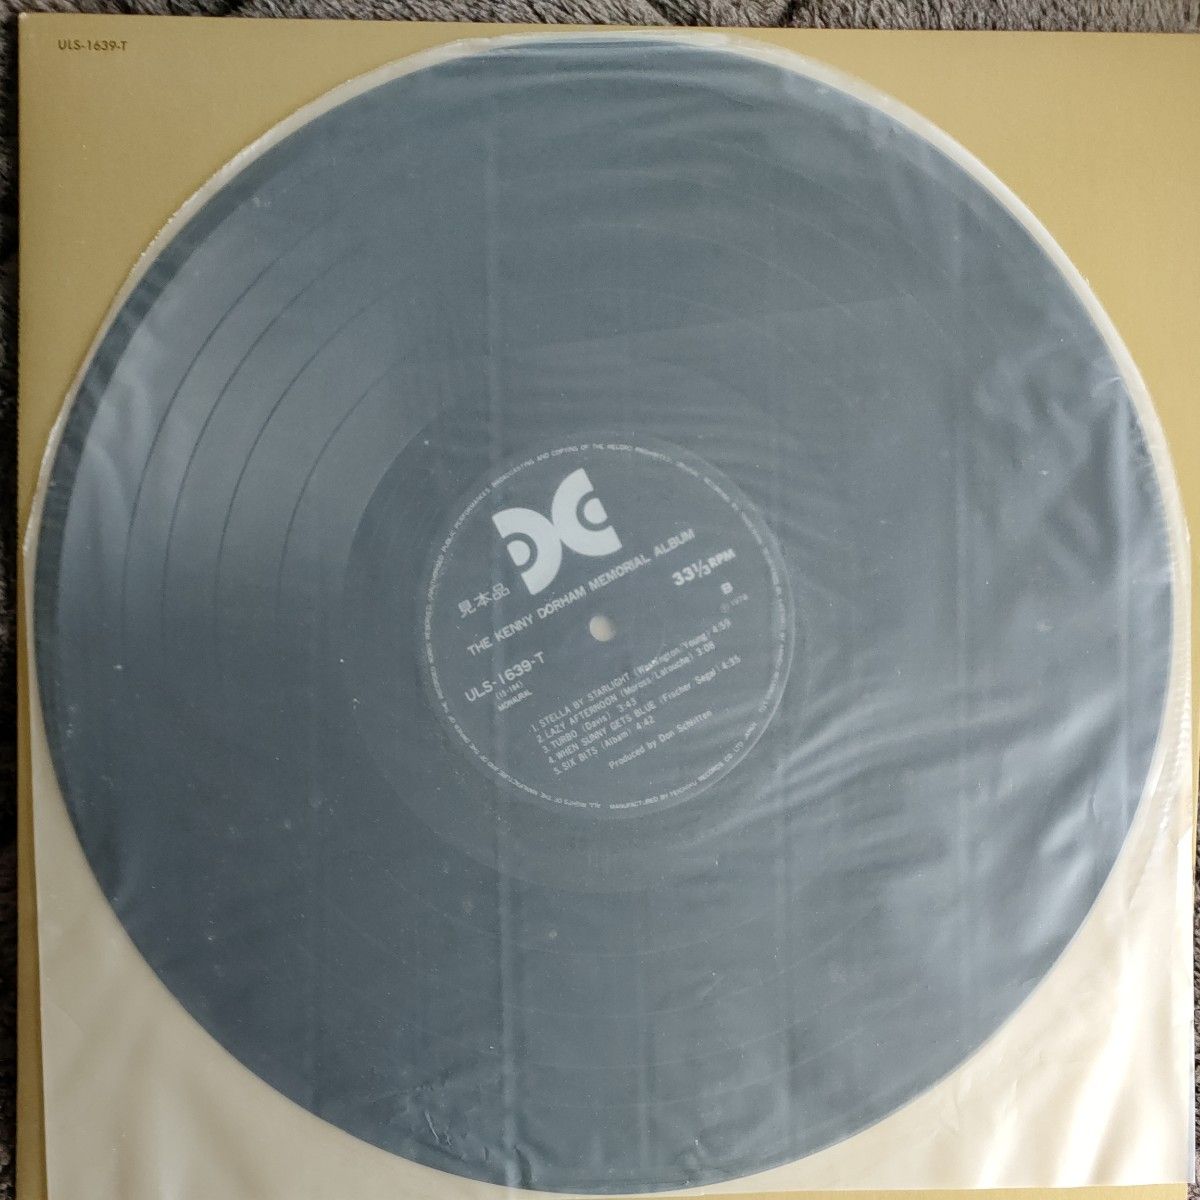 THE Kenny Dorham Memorial Album/ Xanadu 国内盤見本盤 LP 